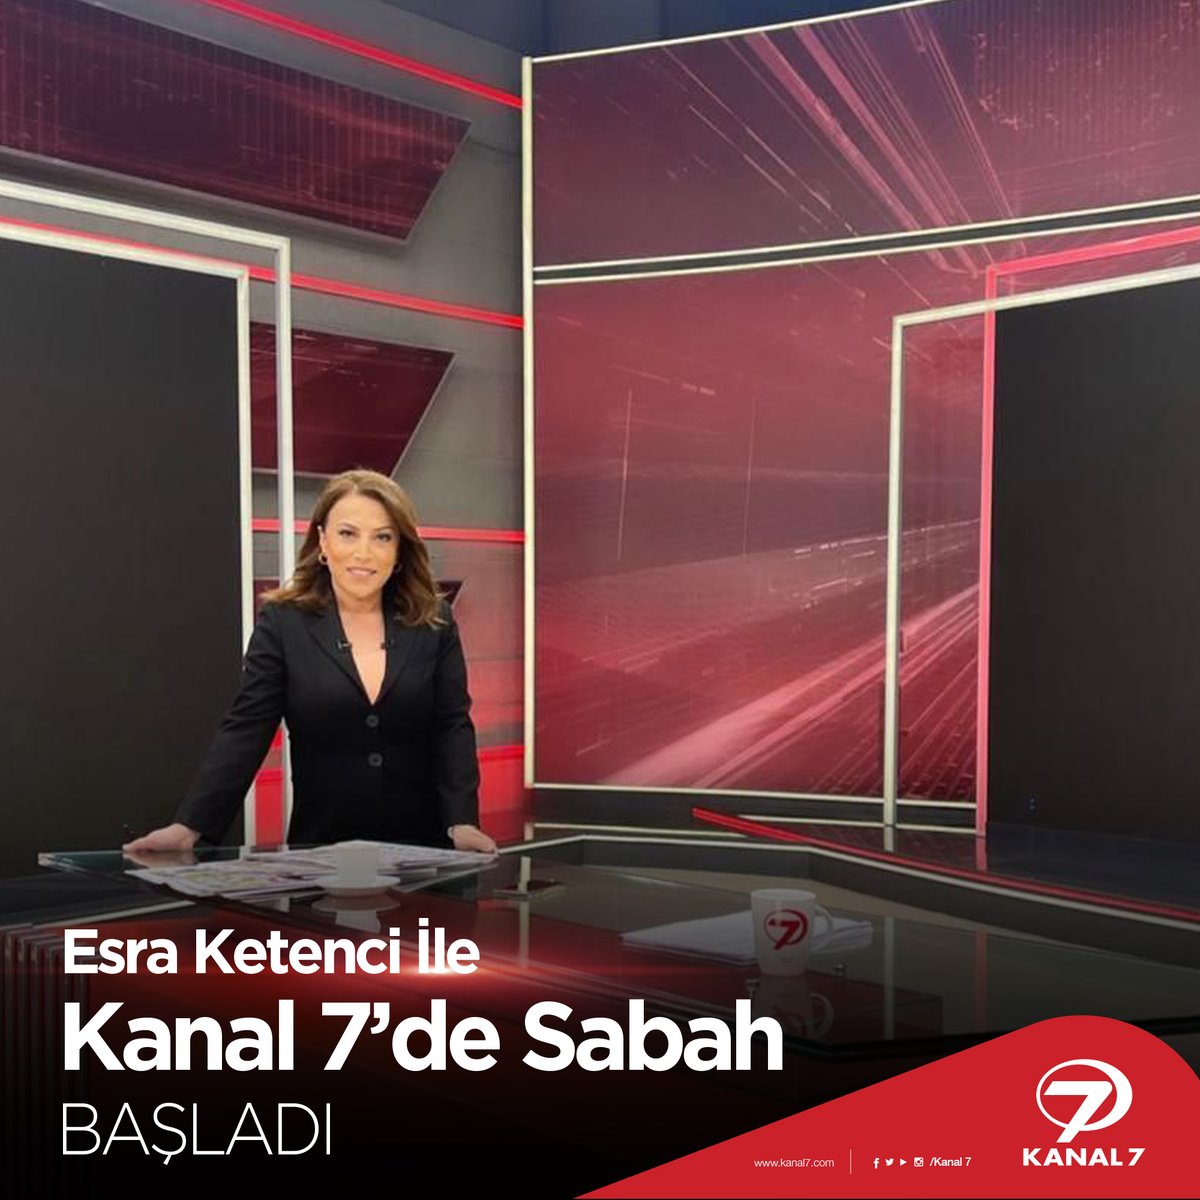 Ekranların başarılı ismi Esra Ketenci'nin sunumuyla Kanal 7'de Sabah şimdi sizlerle... 😊 #haber #esraketenci #kanal7desabah #kanal7